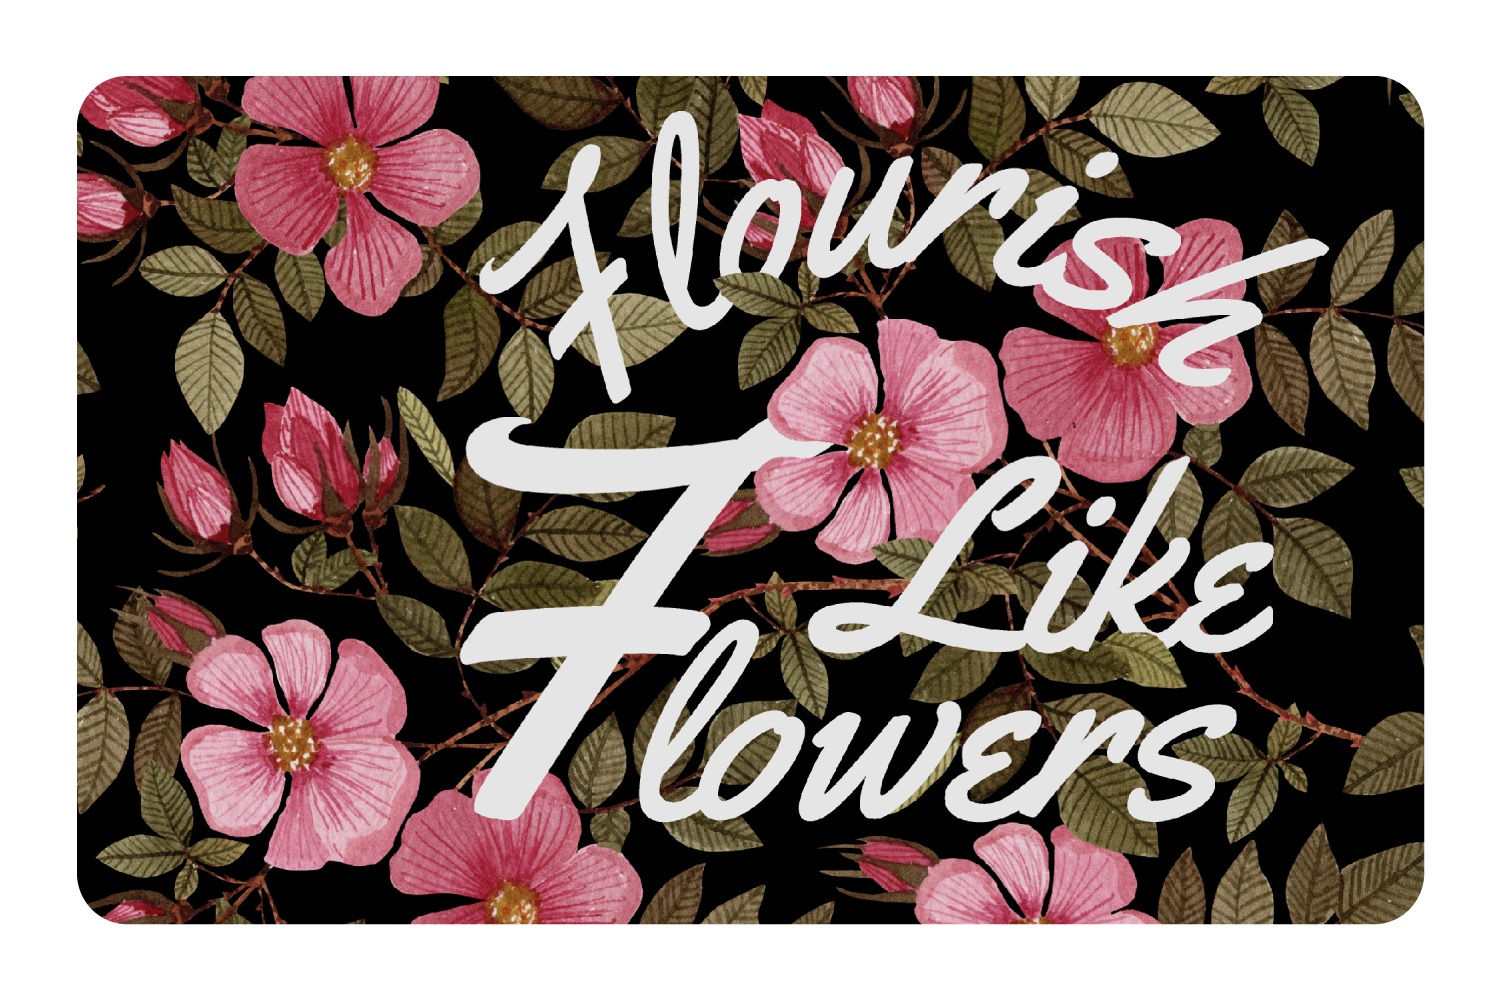 Flourish Like Flowers